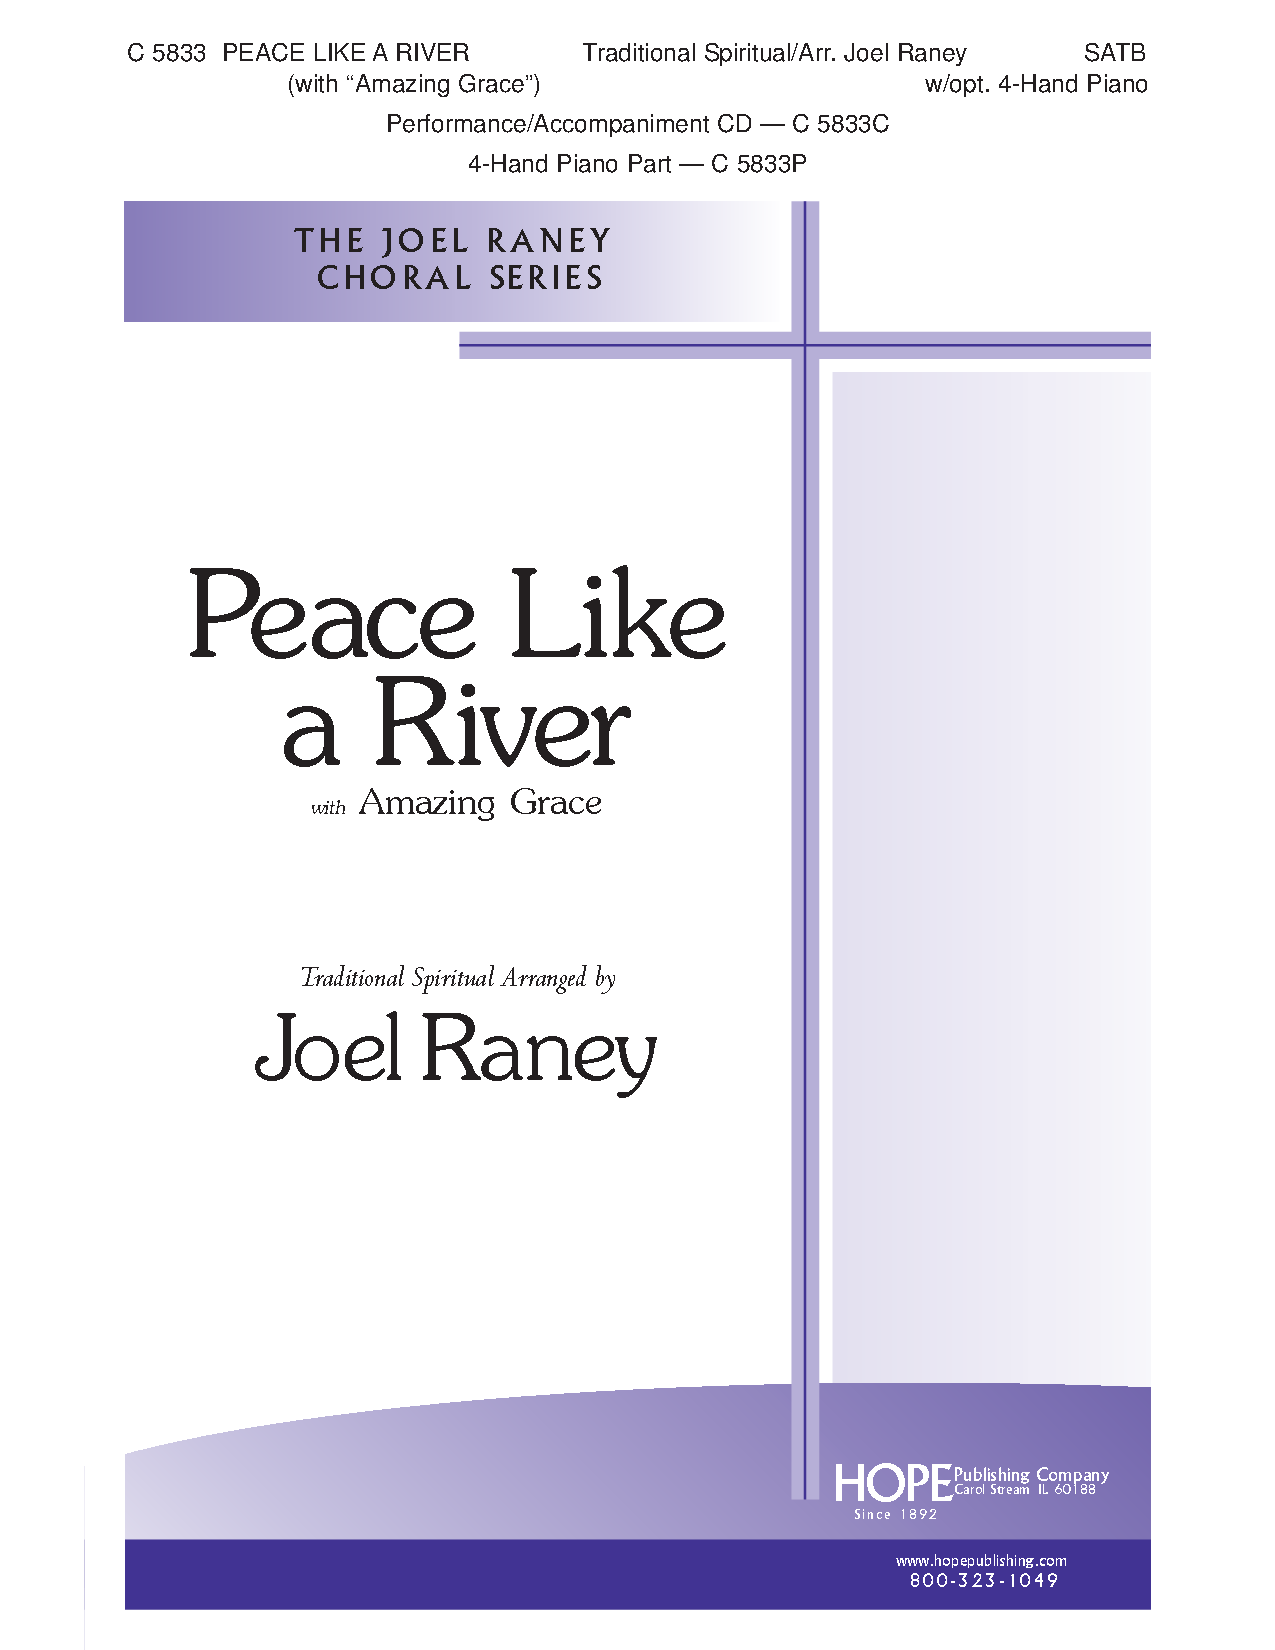 Peace Like a River P.O.D.